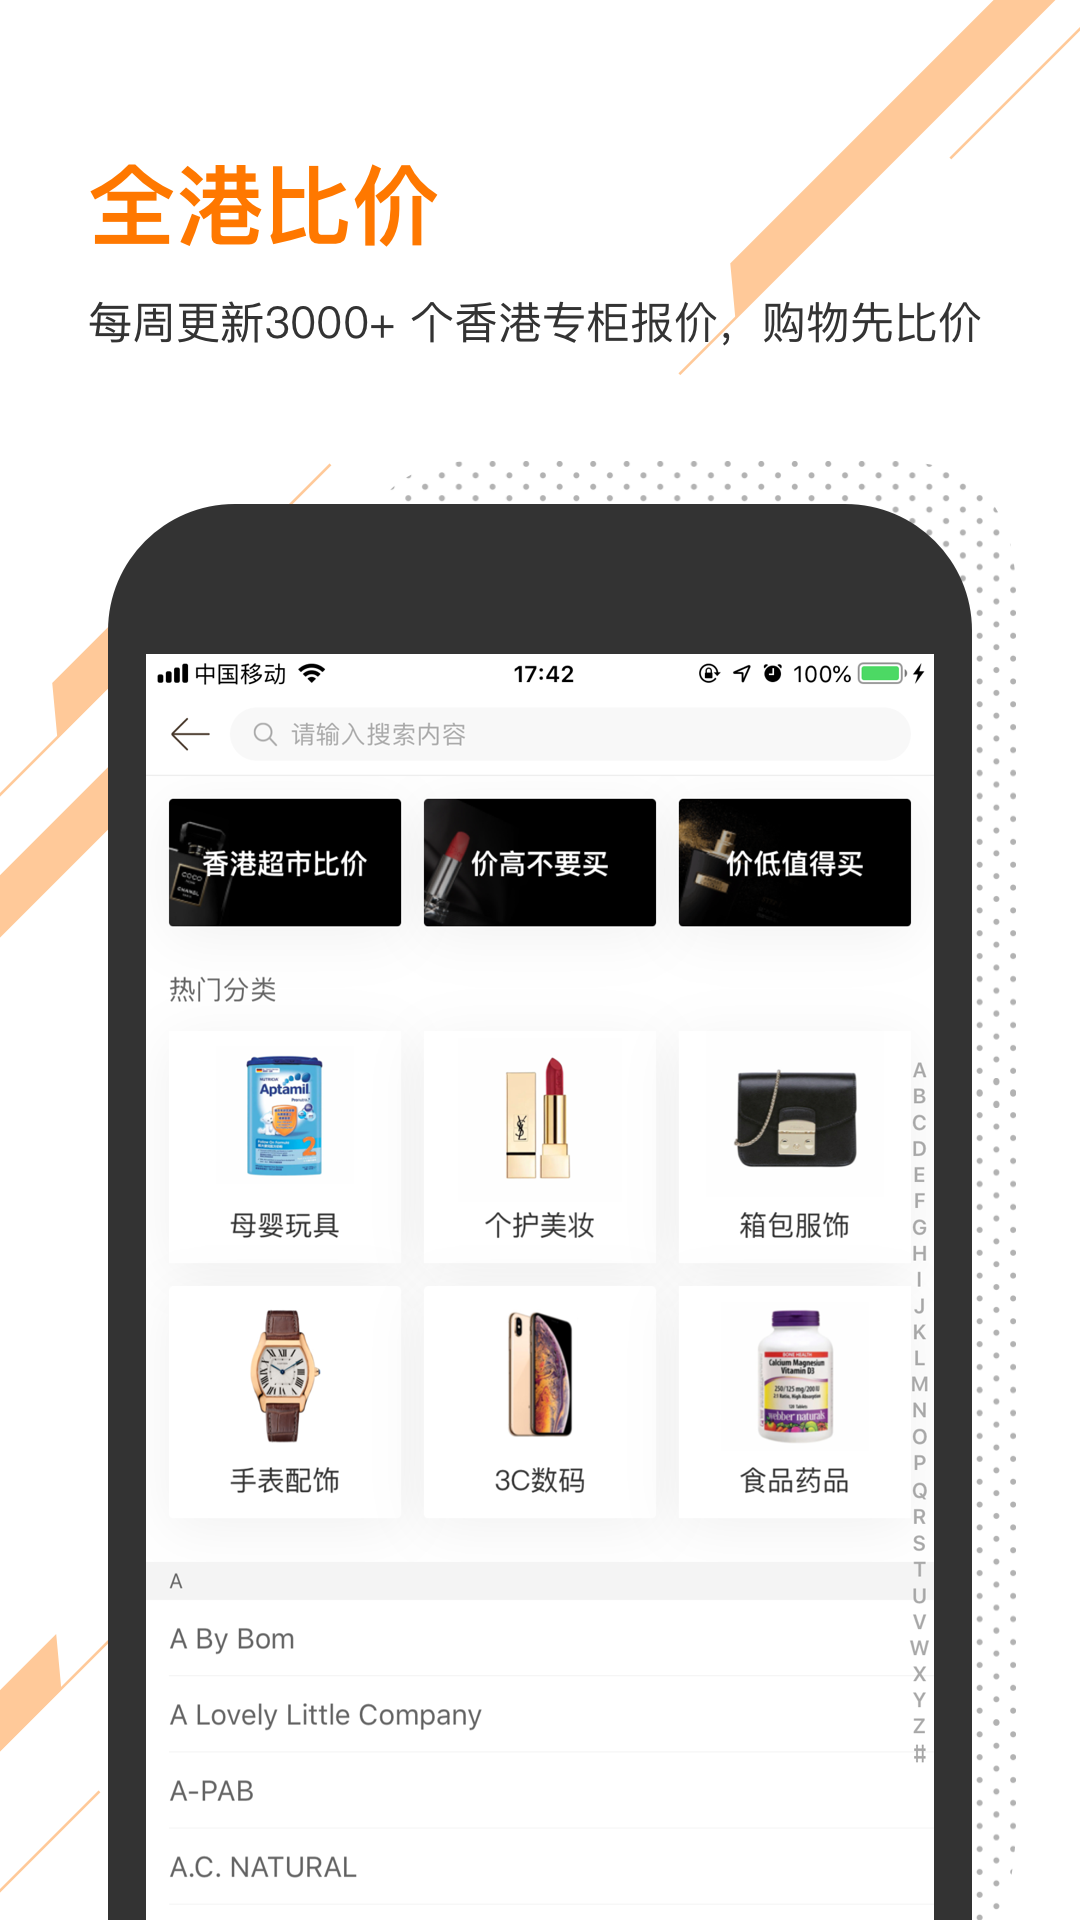 口袋香港app截图